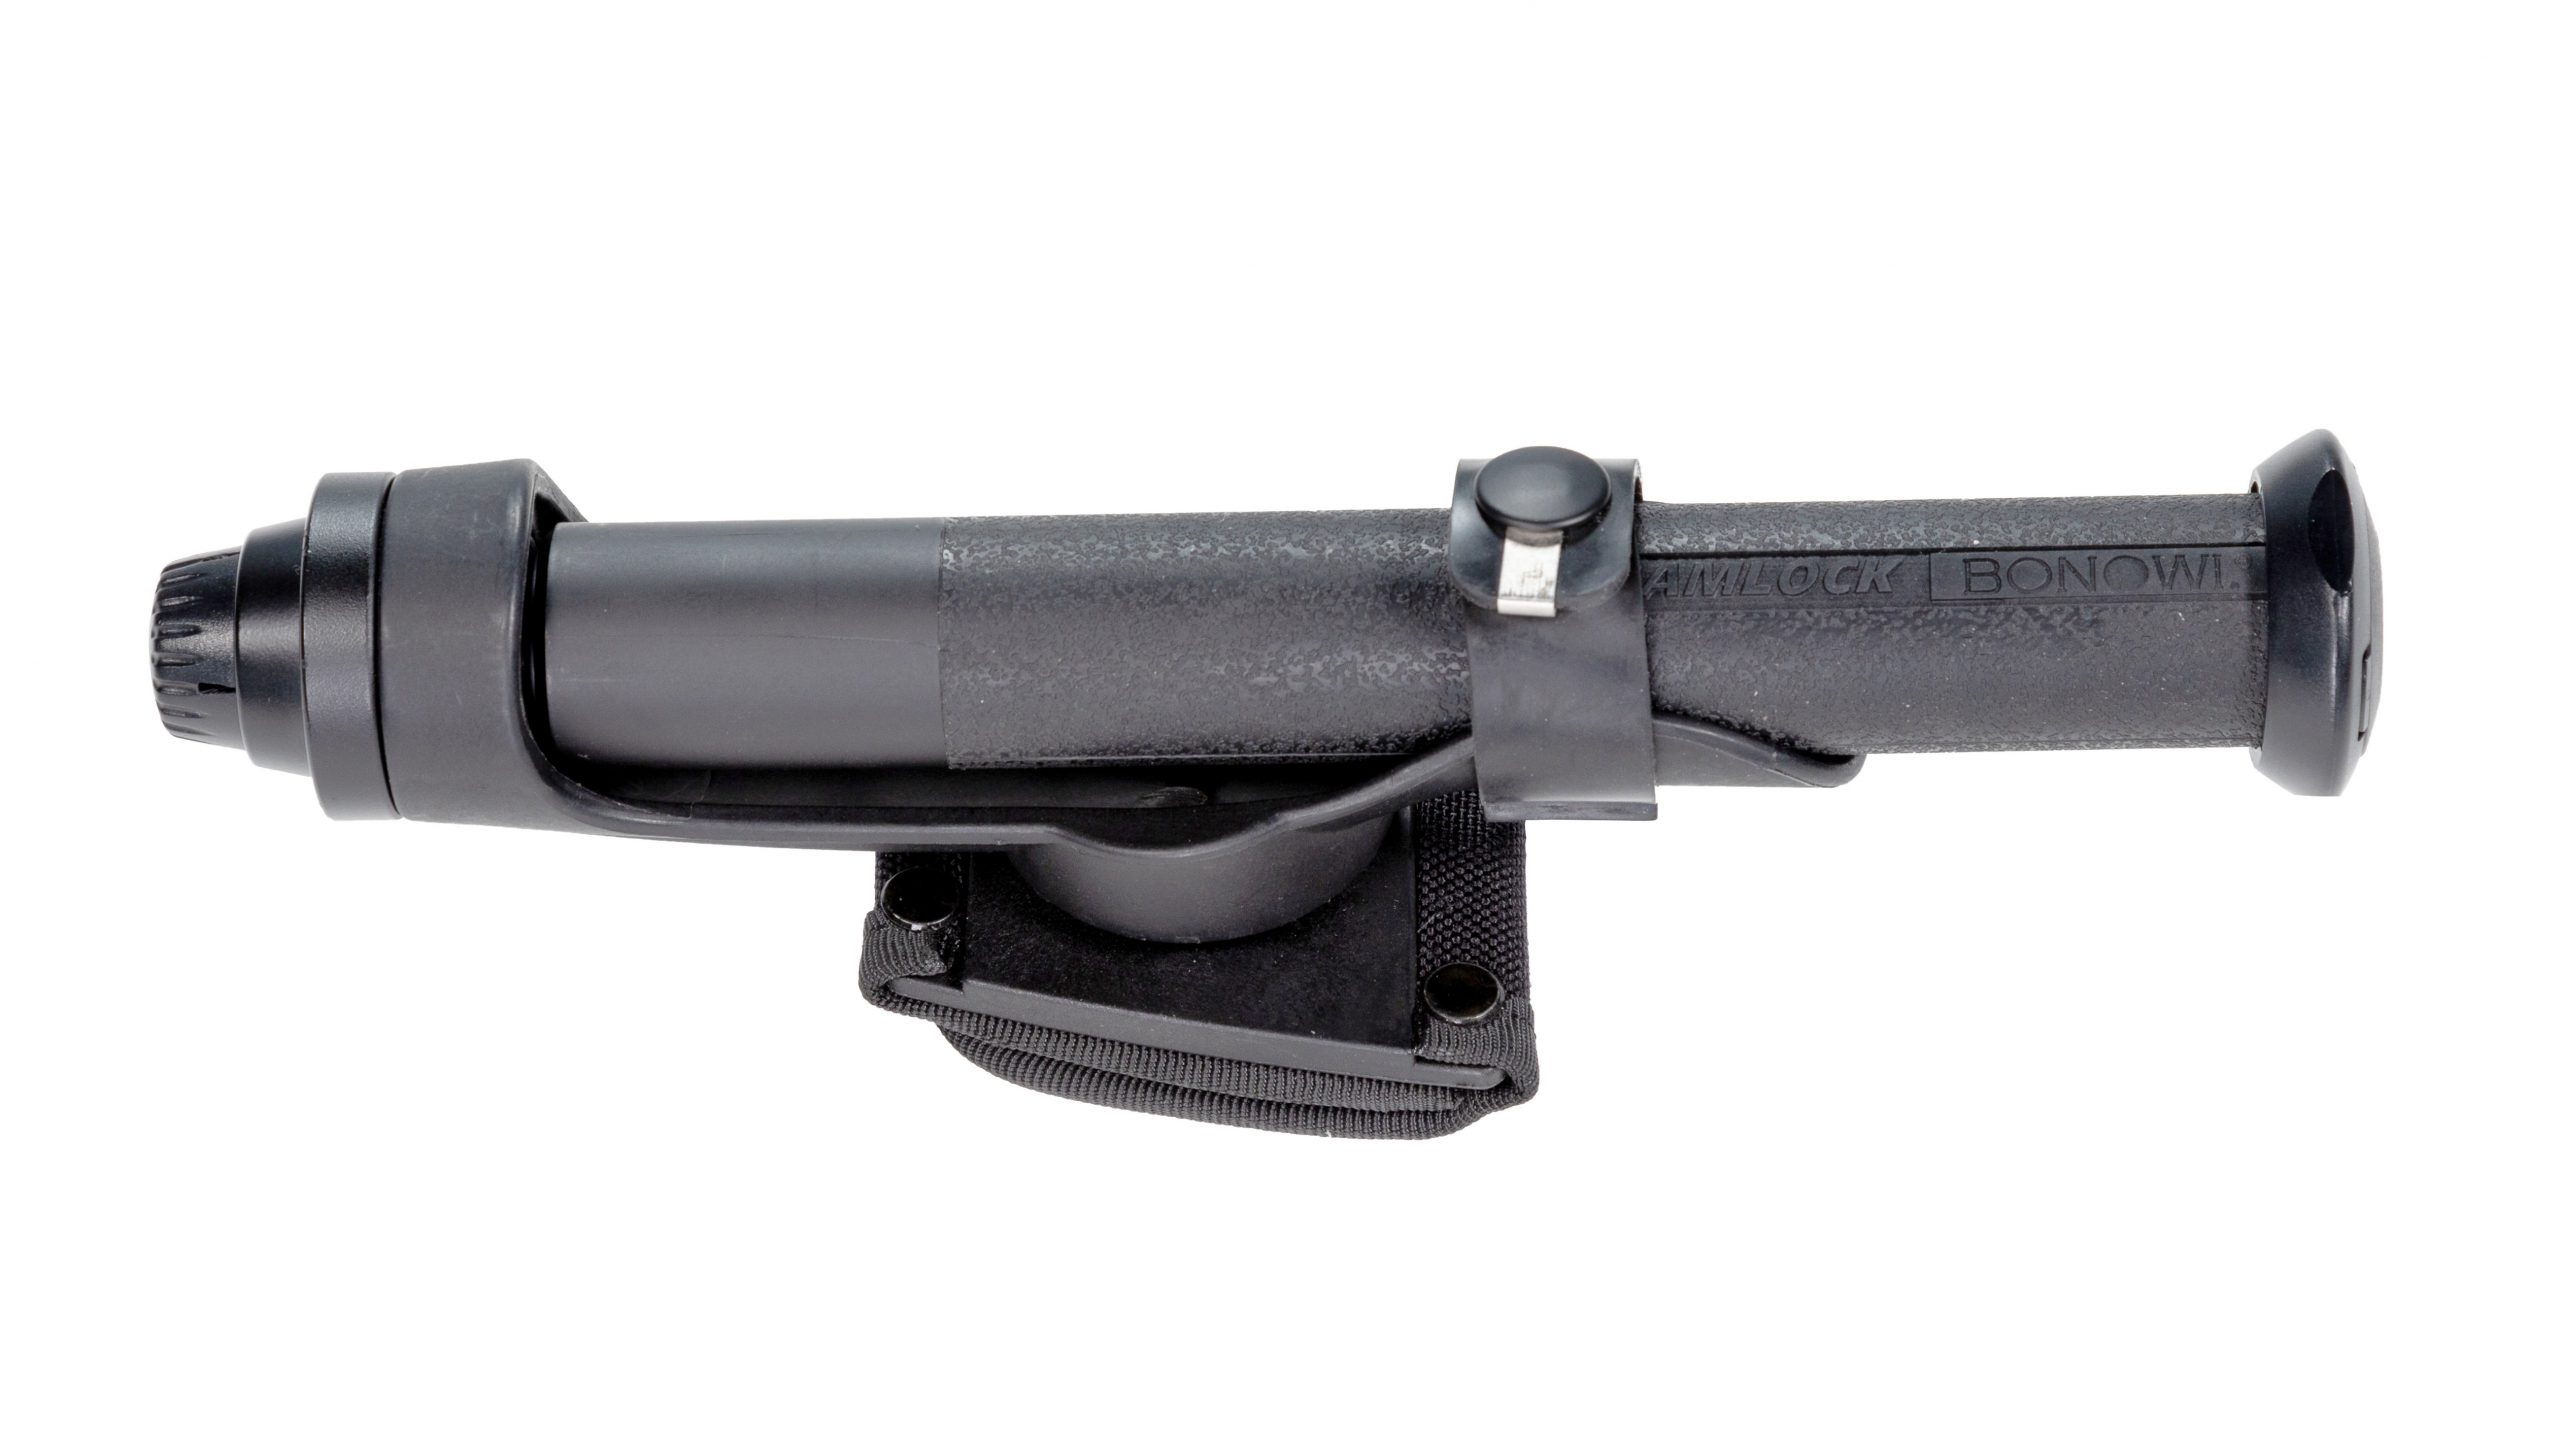 Das Gürtelholster H1 wurde speziell für den Bonowi Einsatzstock (auch mit Defense Adapter) entwickelt